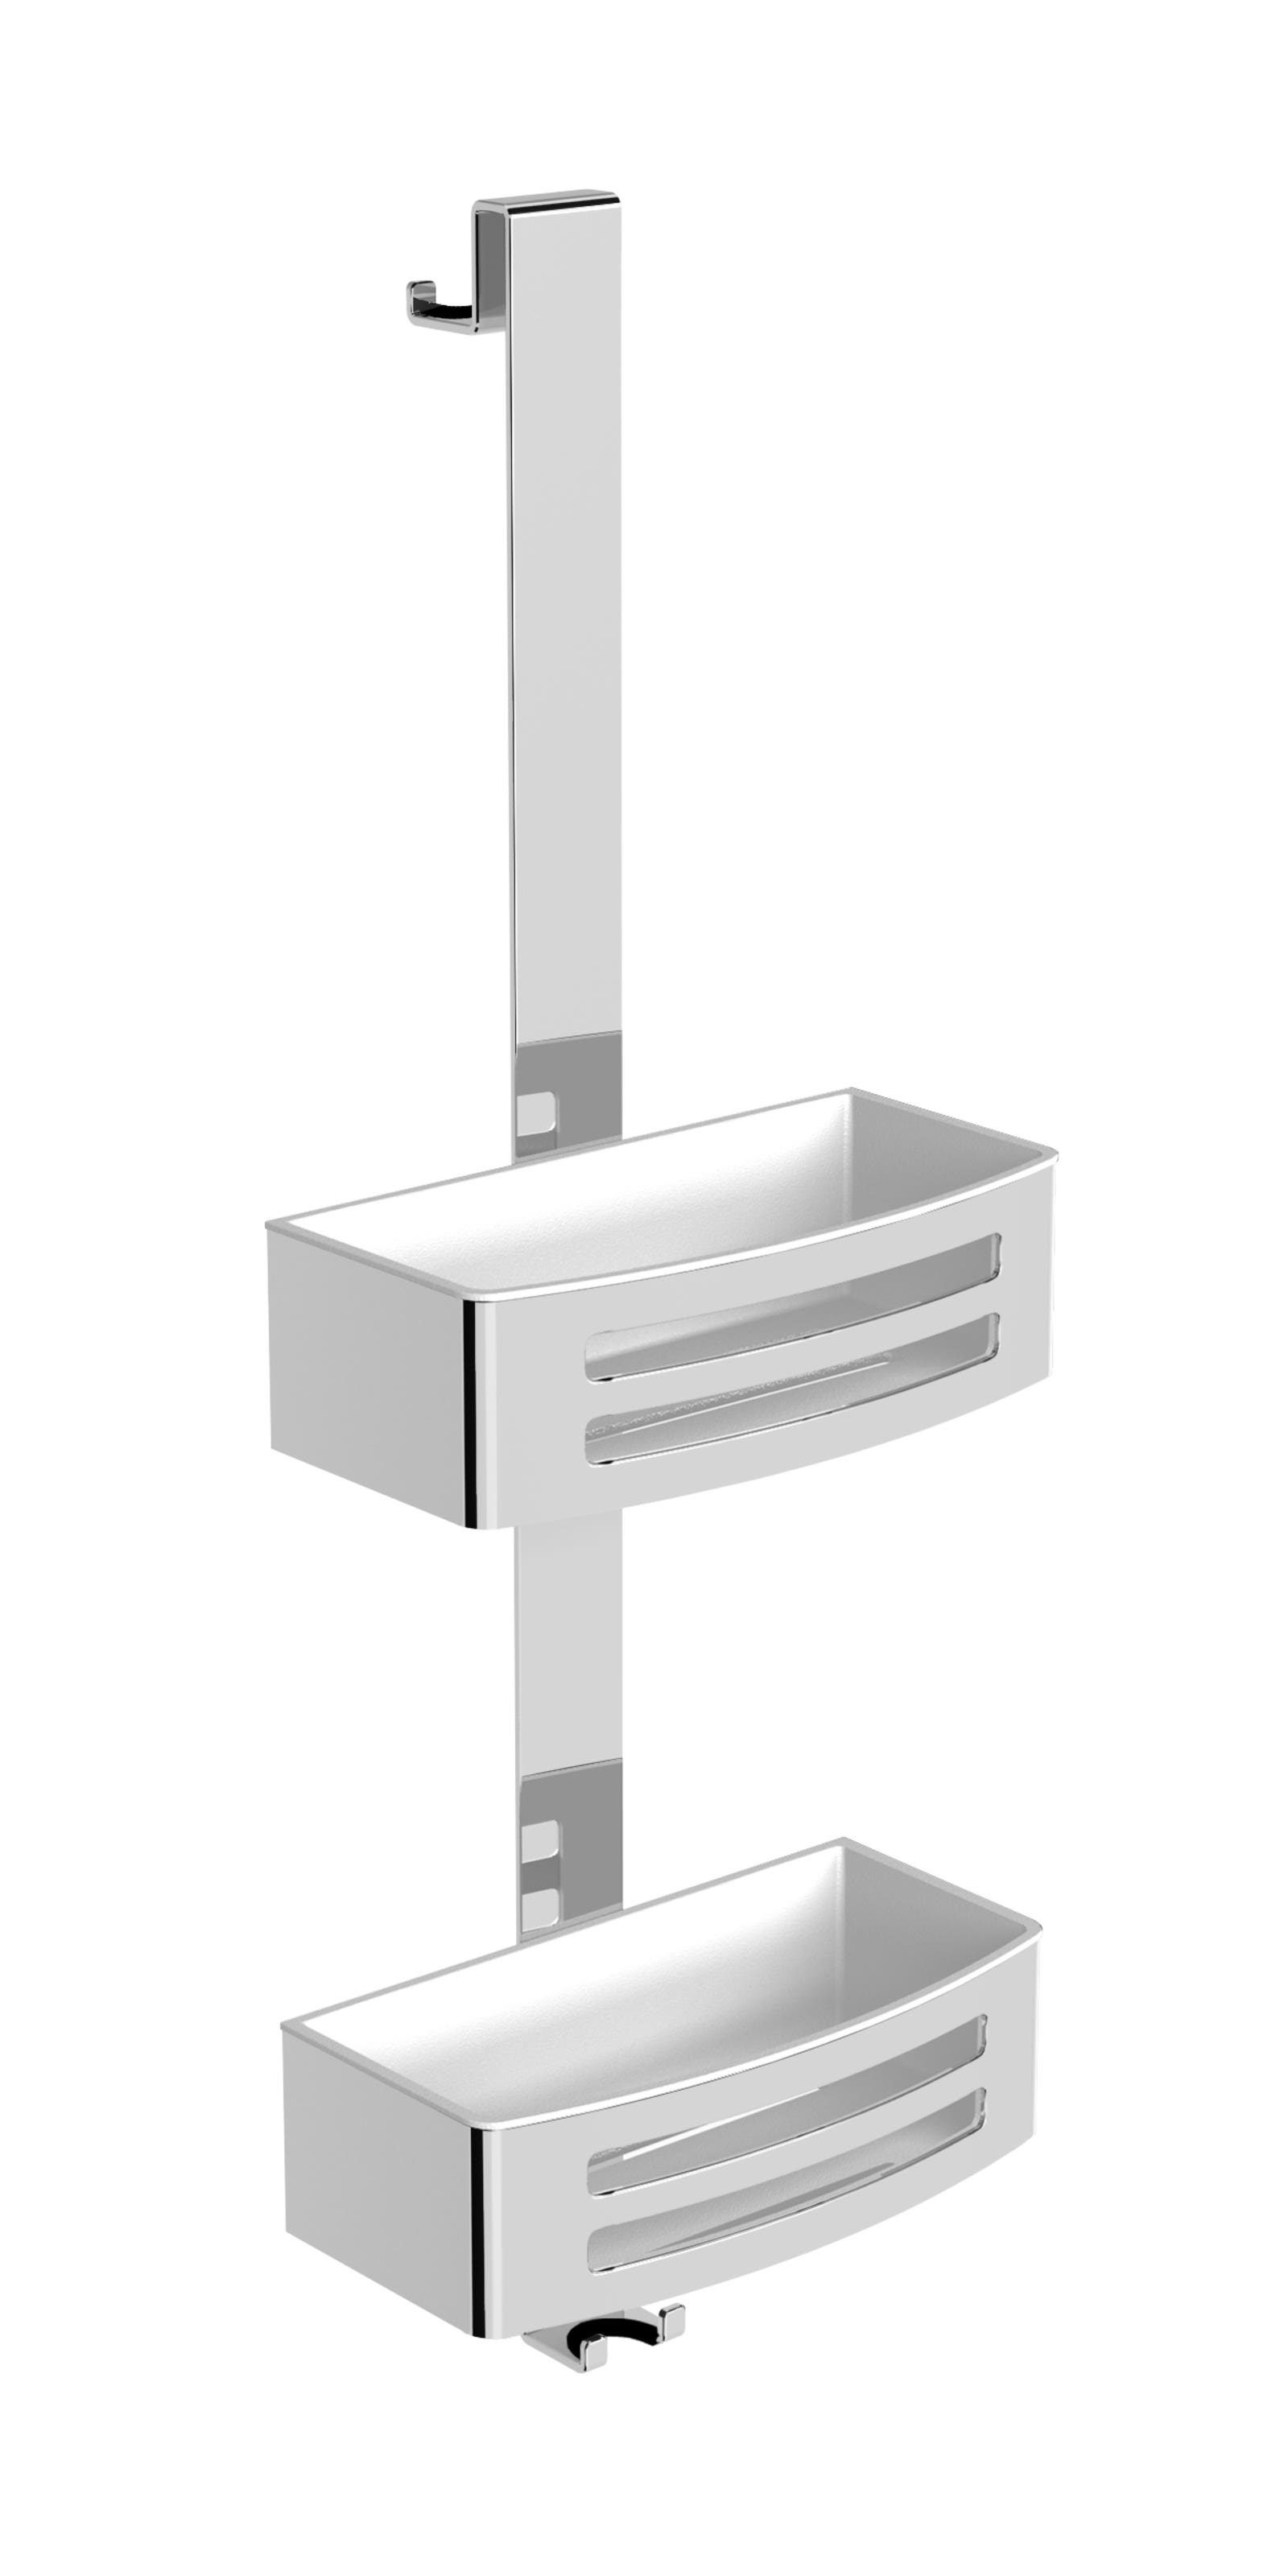 Dusch-Reling mit zwei Körben weiß individual 3.0-V3EDKWE-